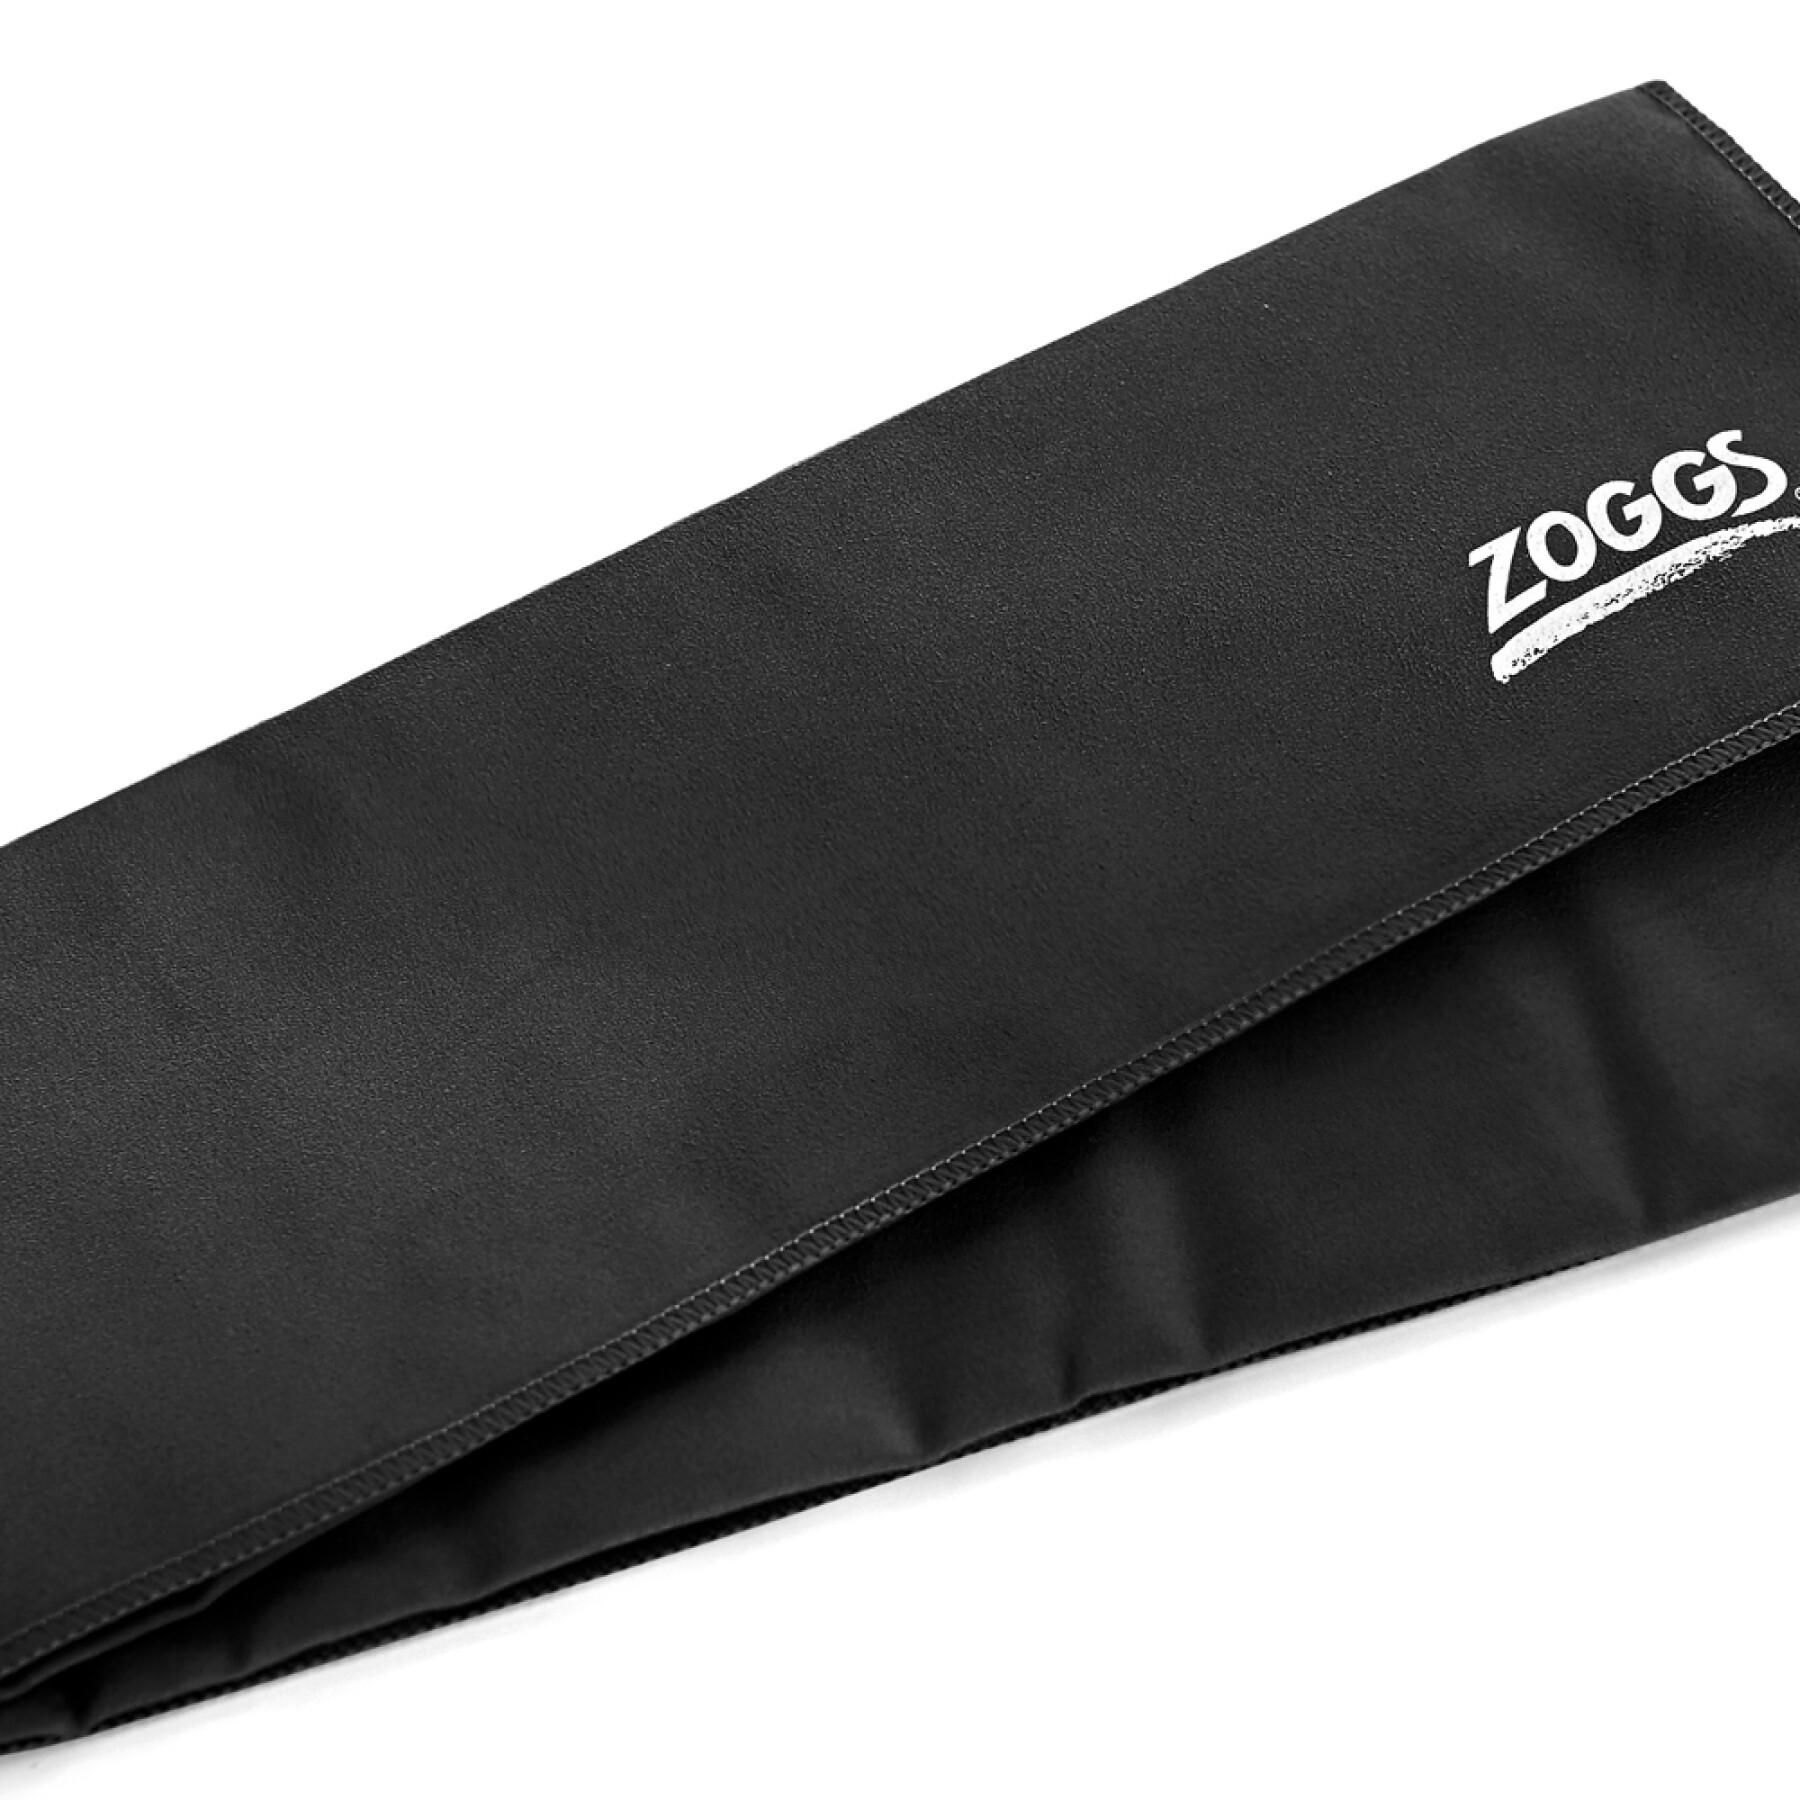 Towel Zoggs Elite updated